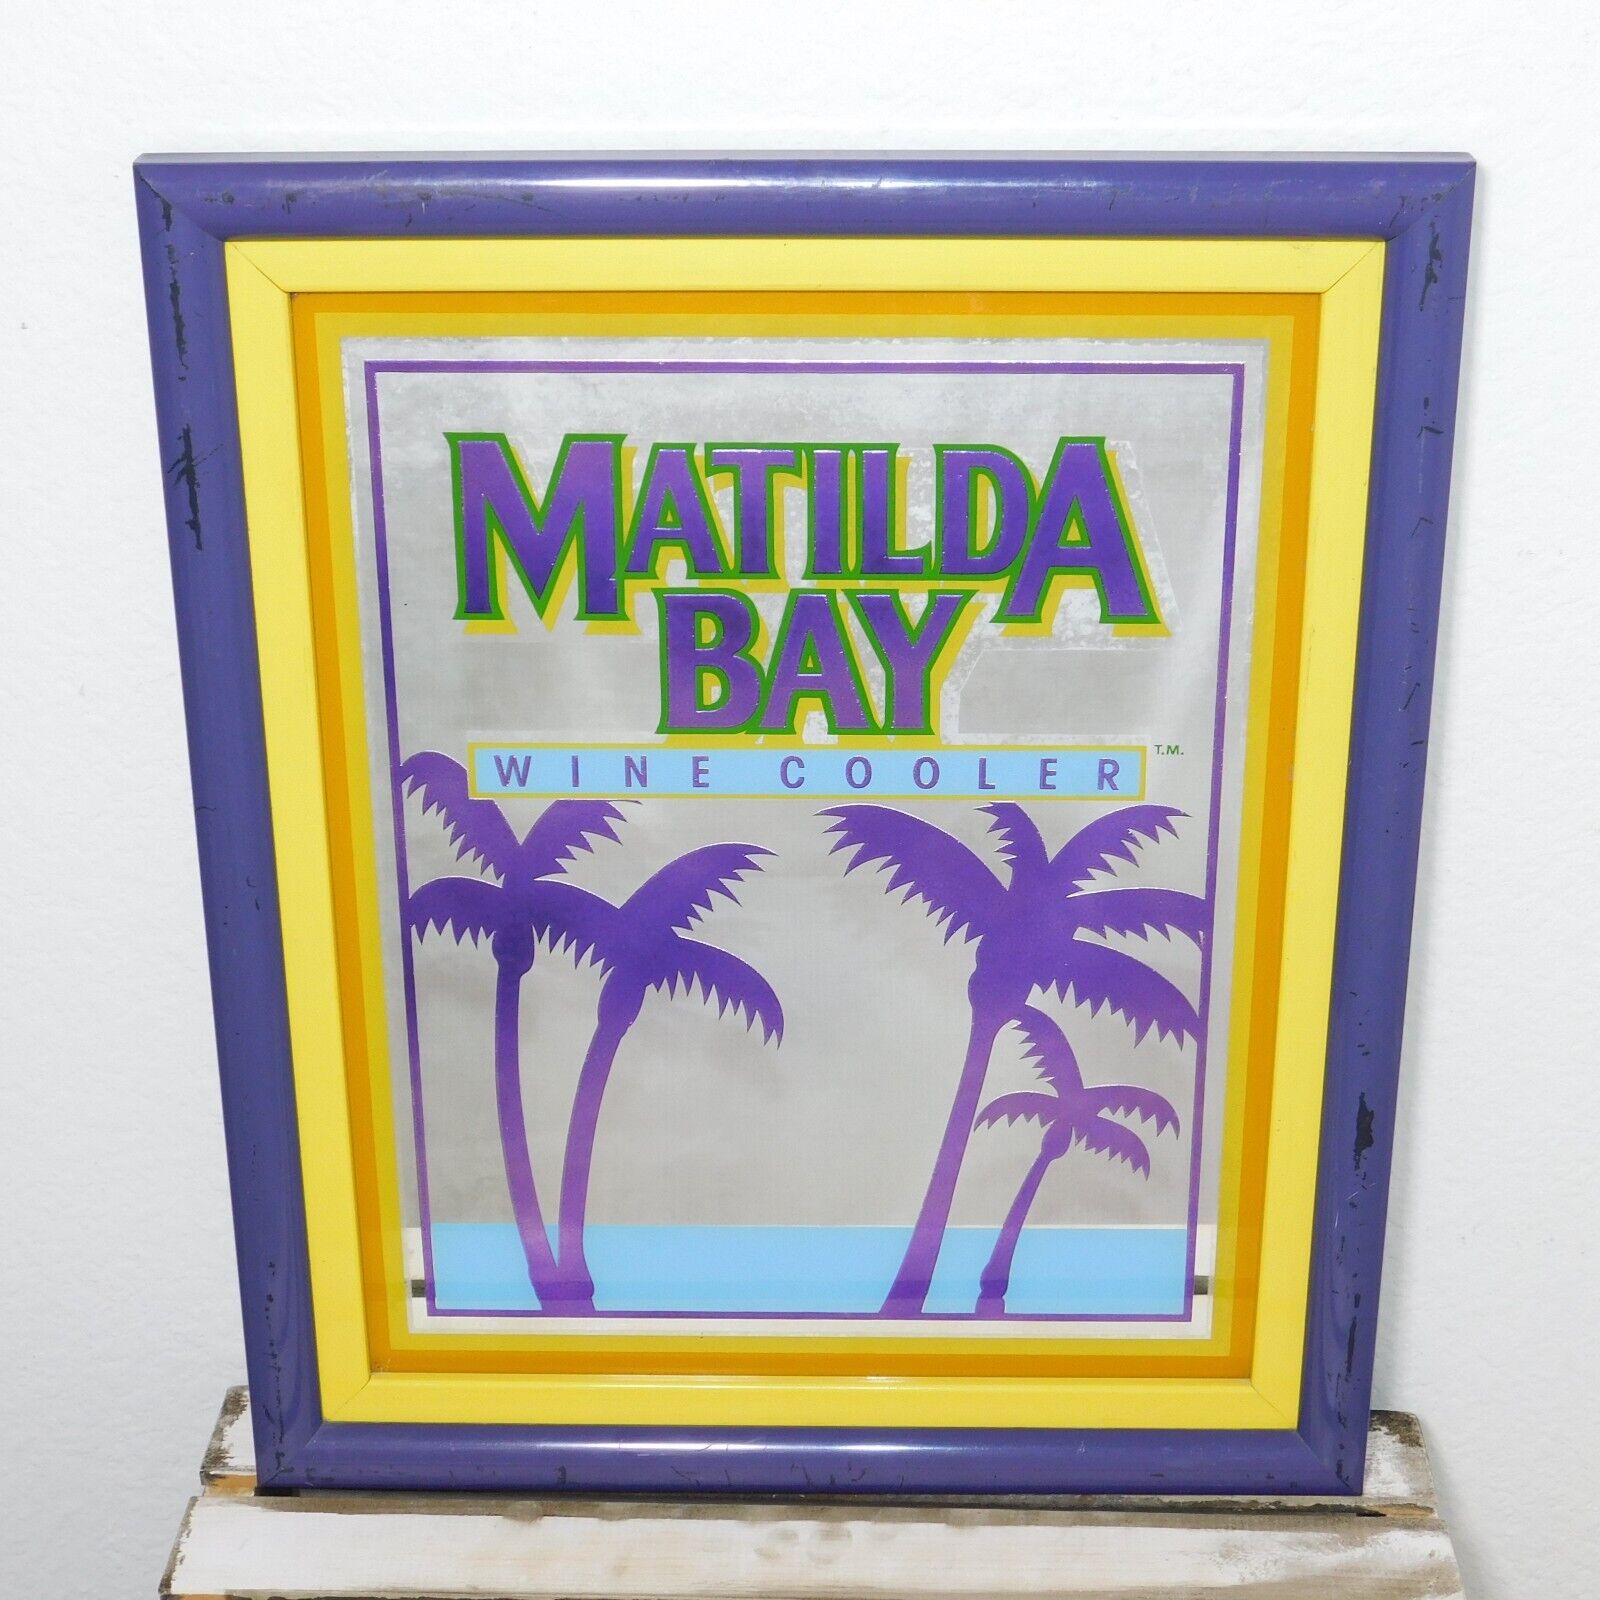 Vintage 1980s Matilda Bay Wine Cooler 19 X 16 Framed Mirror Sign Tiki Bar Lounge